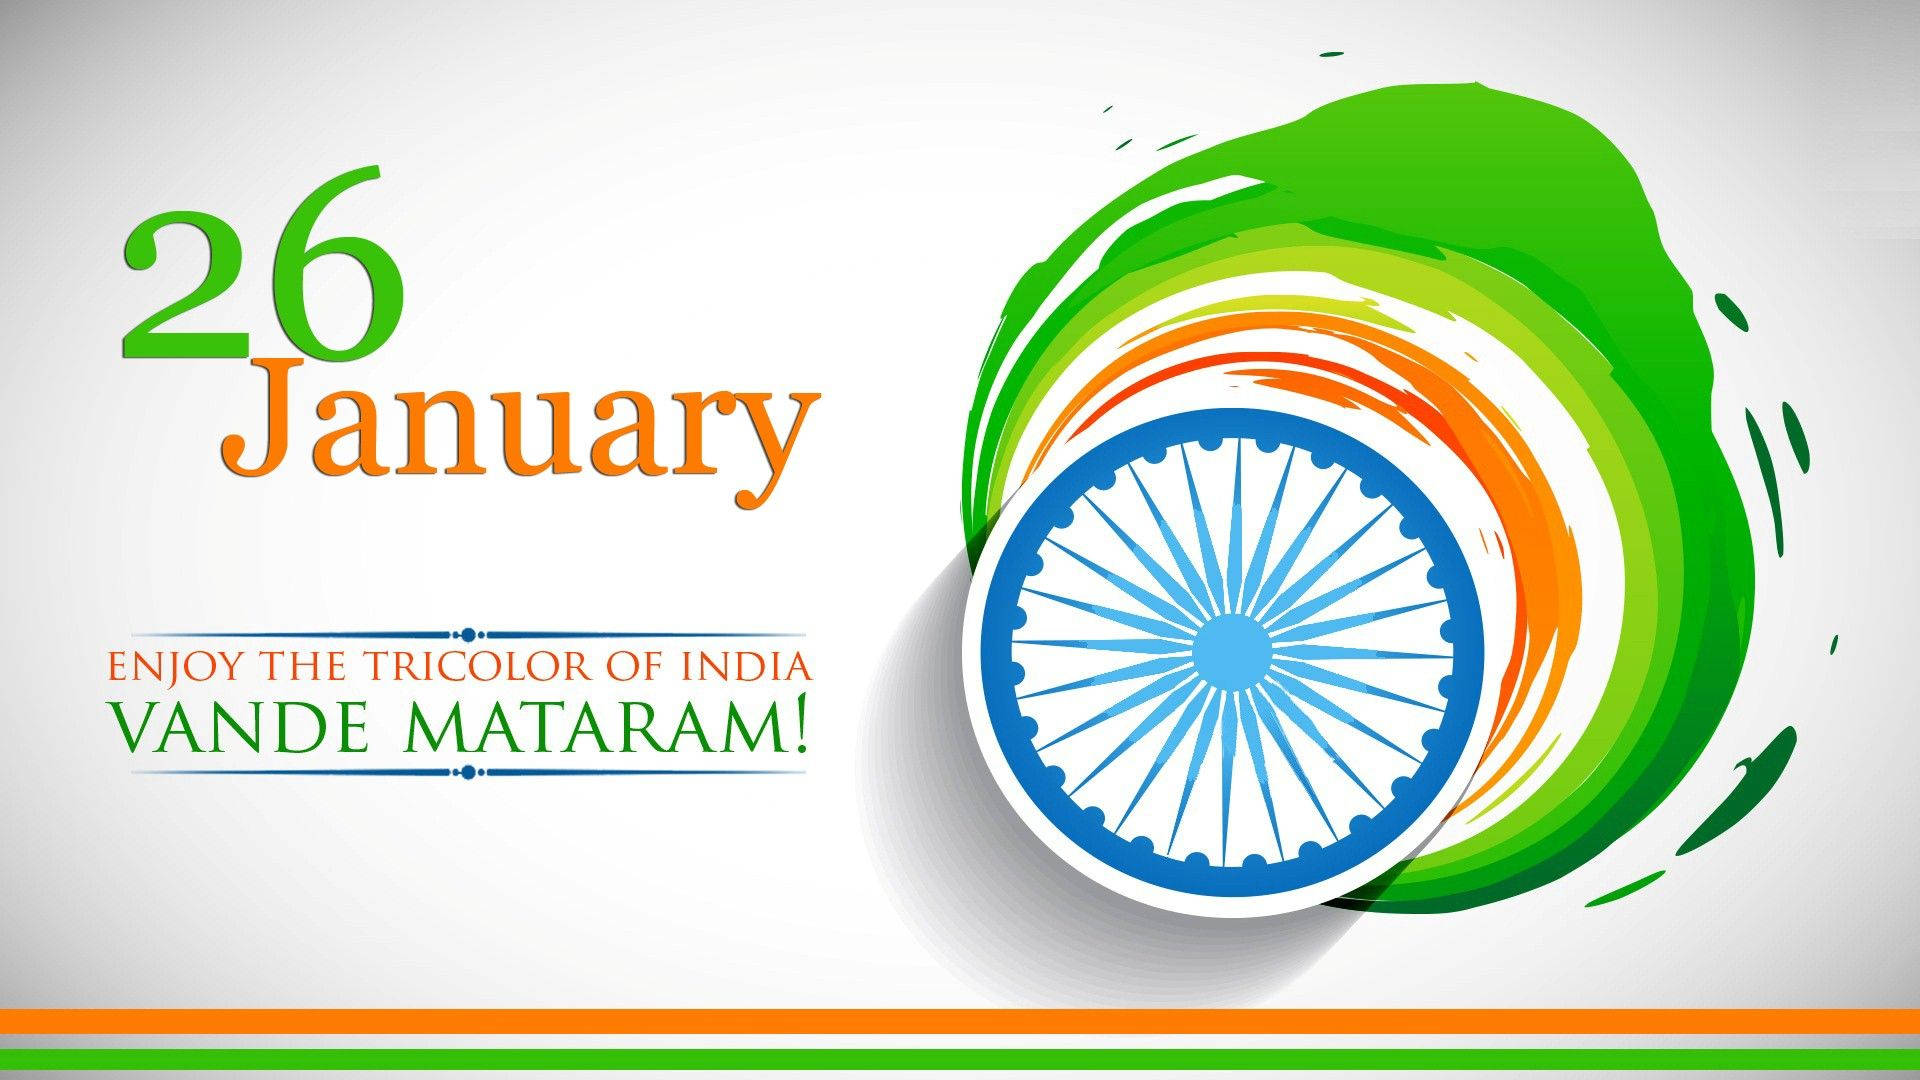 India Tricolor Republic Day